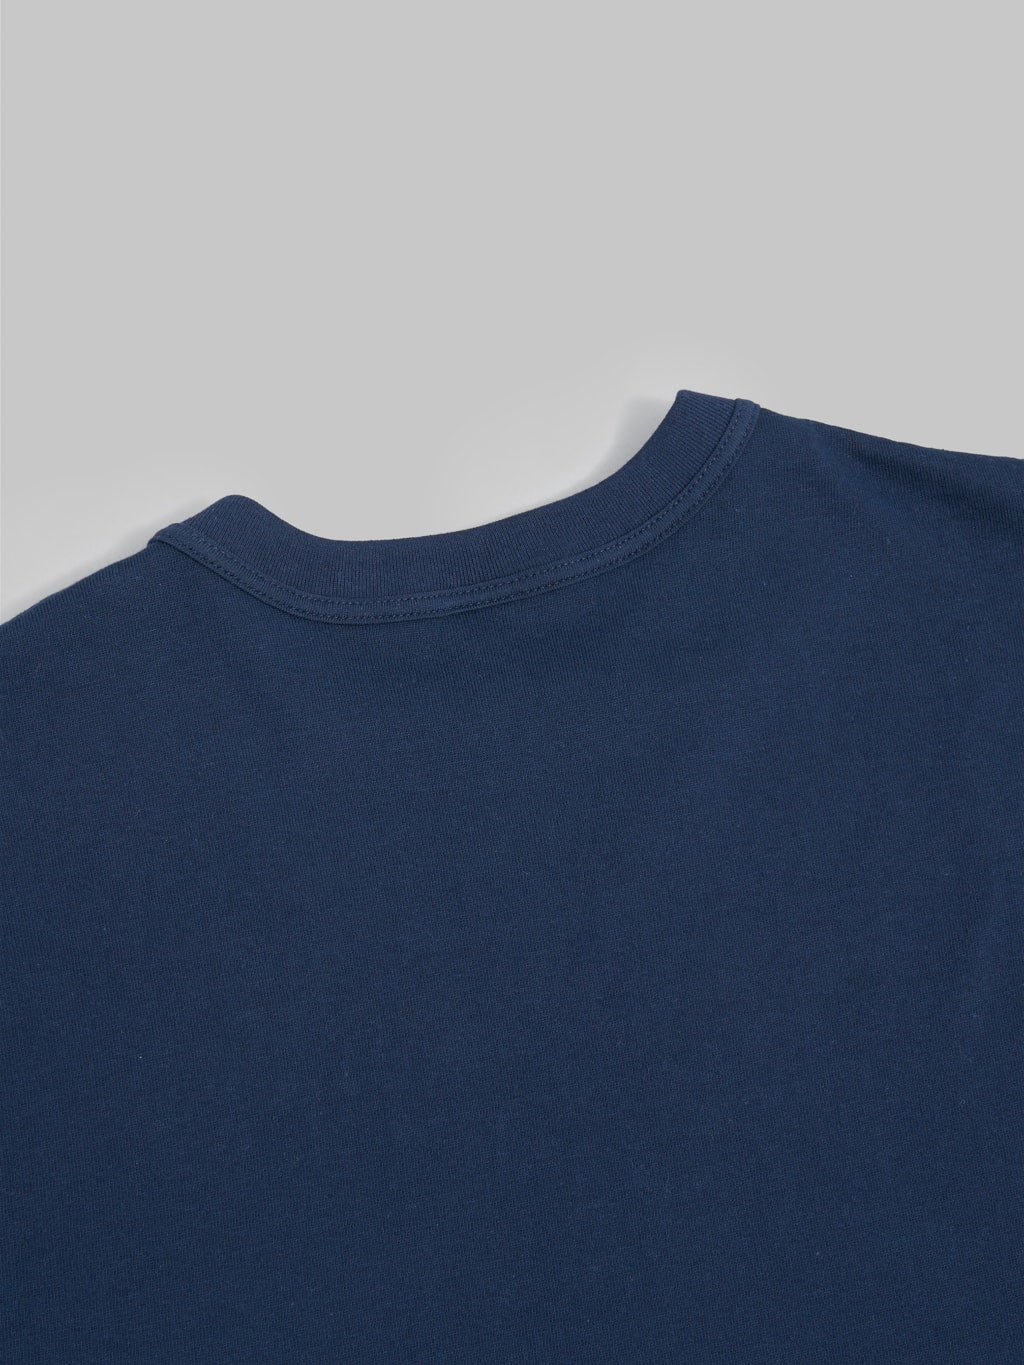 Whitesville Tubular T-Shirt Navy (2 Pack)